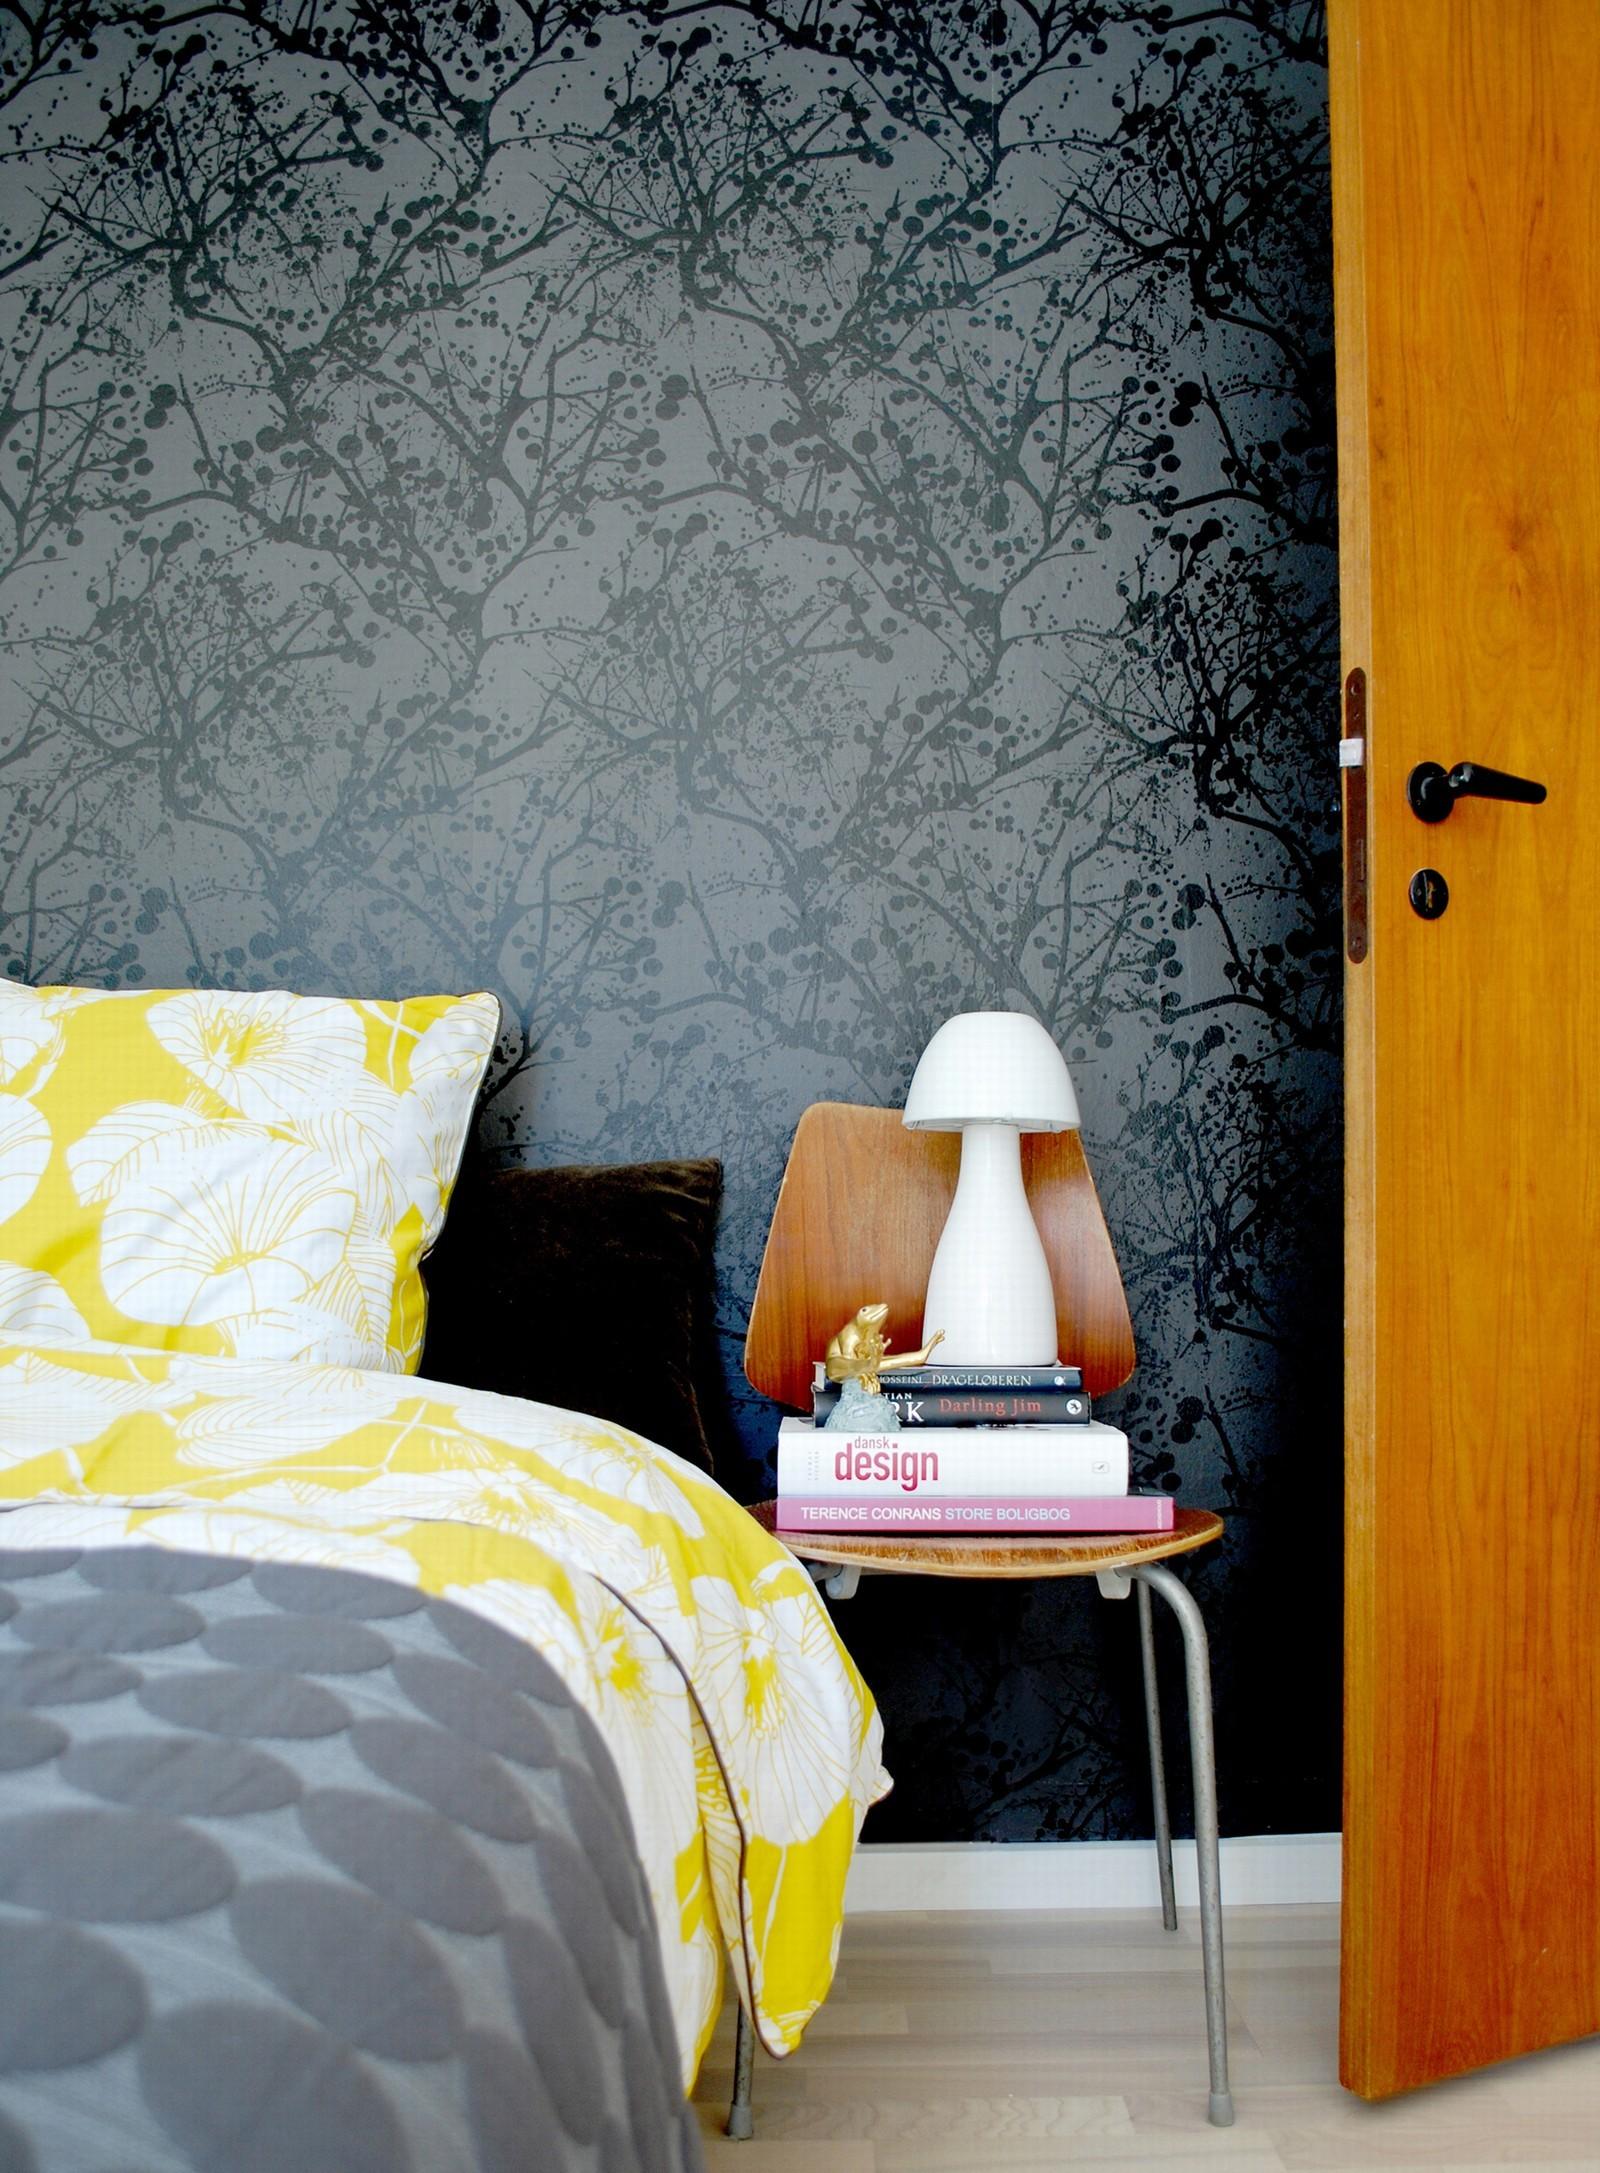 Schlafzimmer gestalten mit einer schwarzen Tapete #stuhl #bett #bettwäsche #tagesdecke #mustertapete #lampe #schlafzimmergestalten ©ferm Living